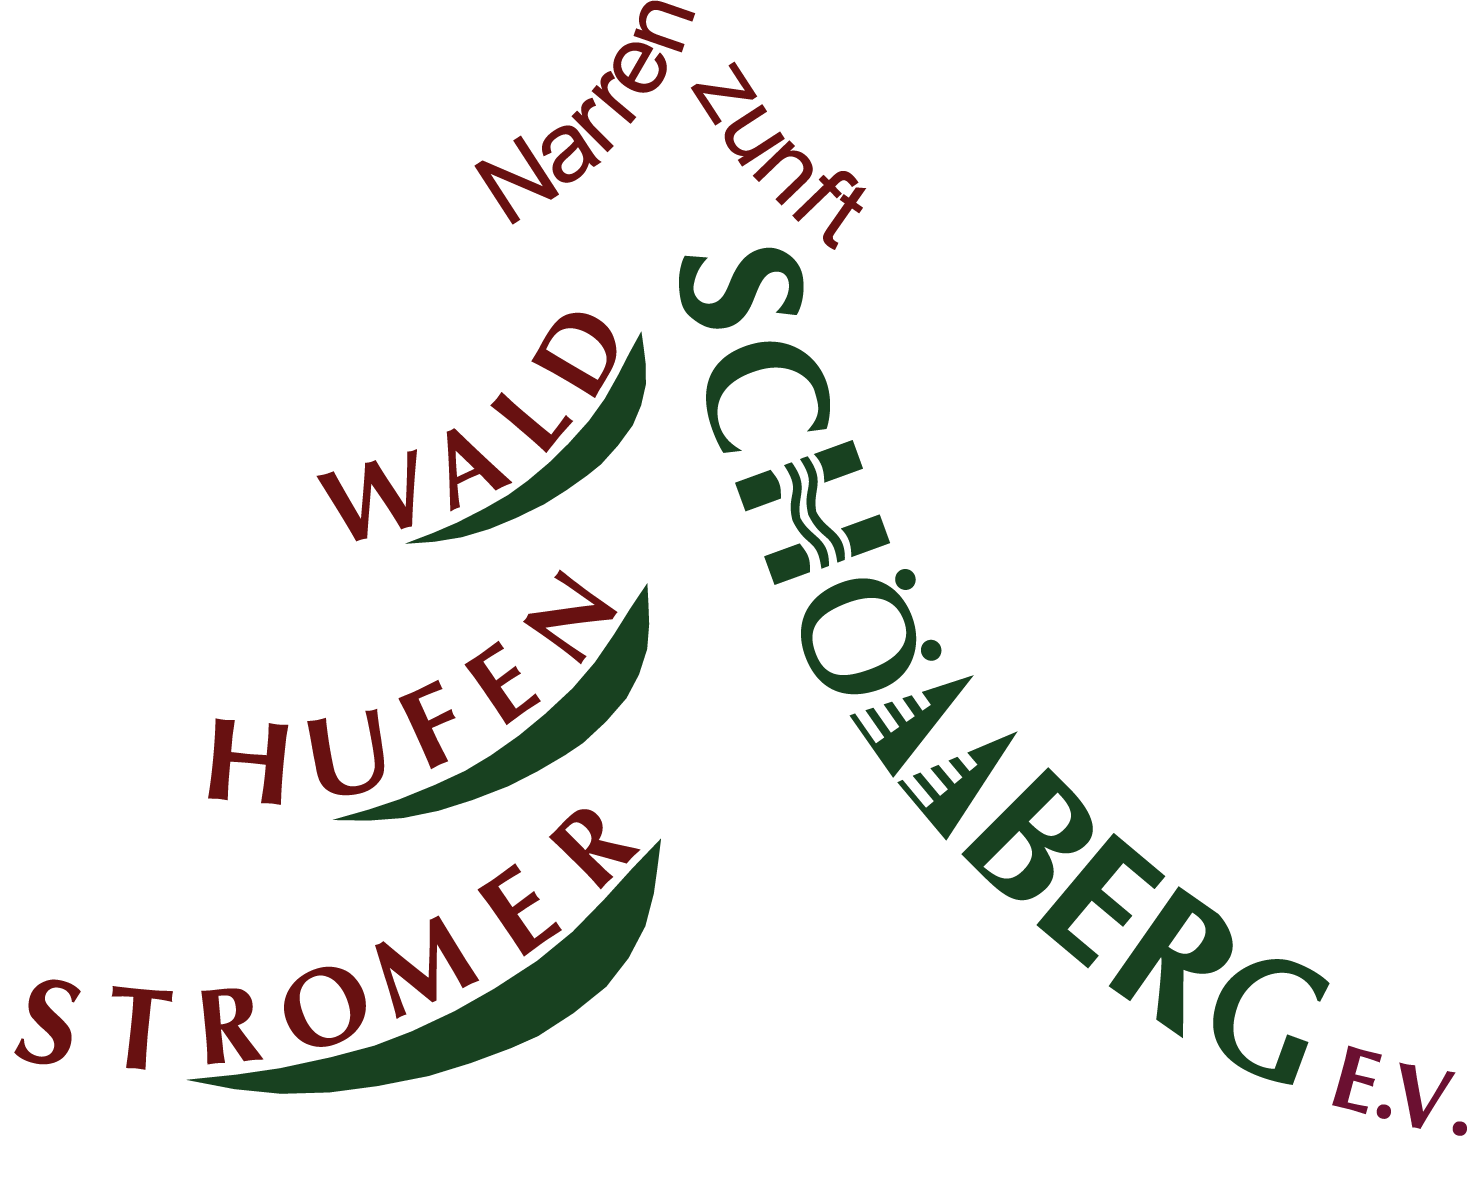 Waldhufenstromer Schömberg